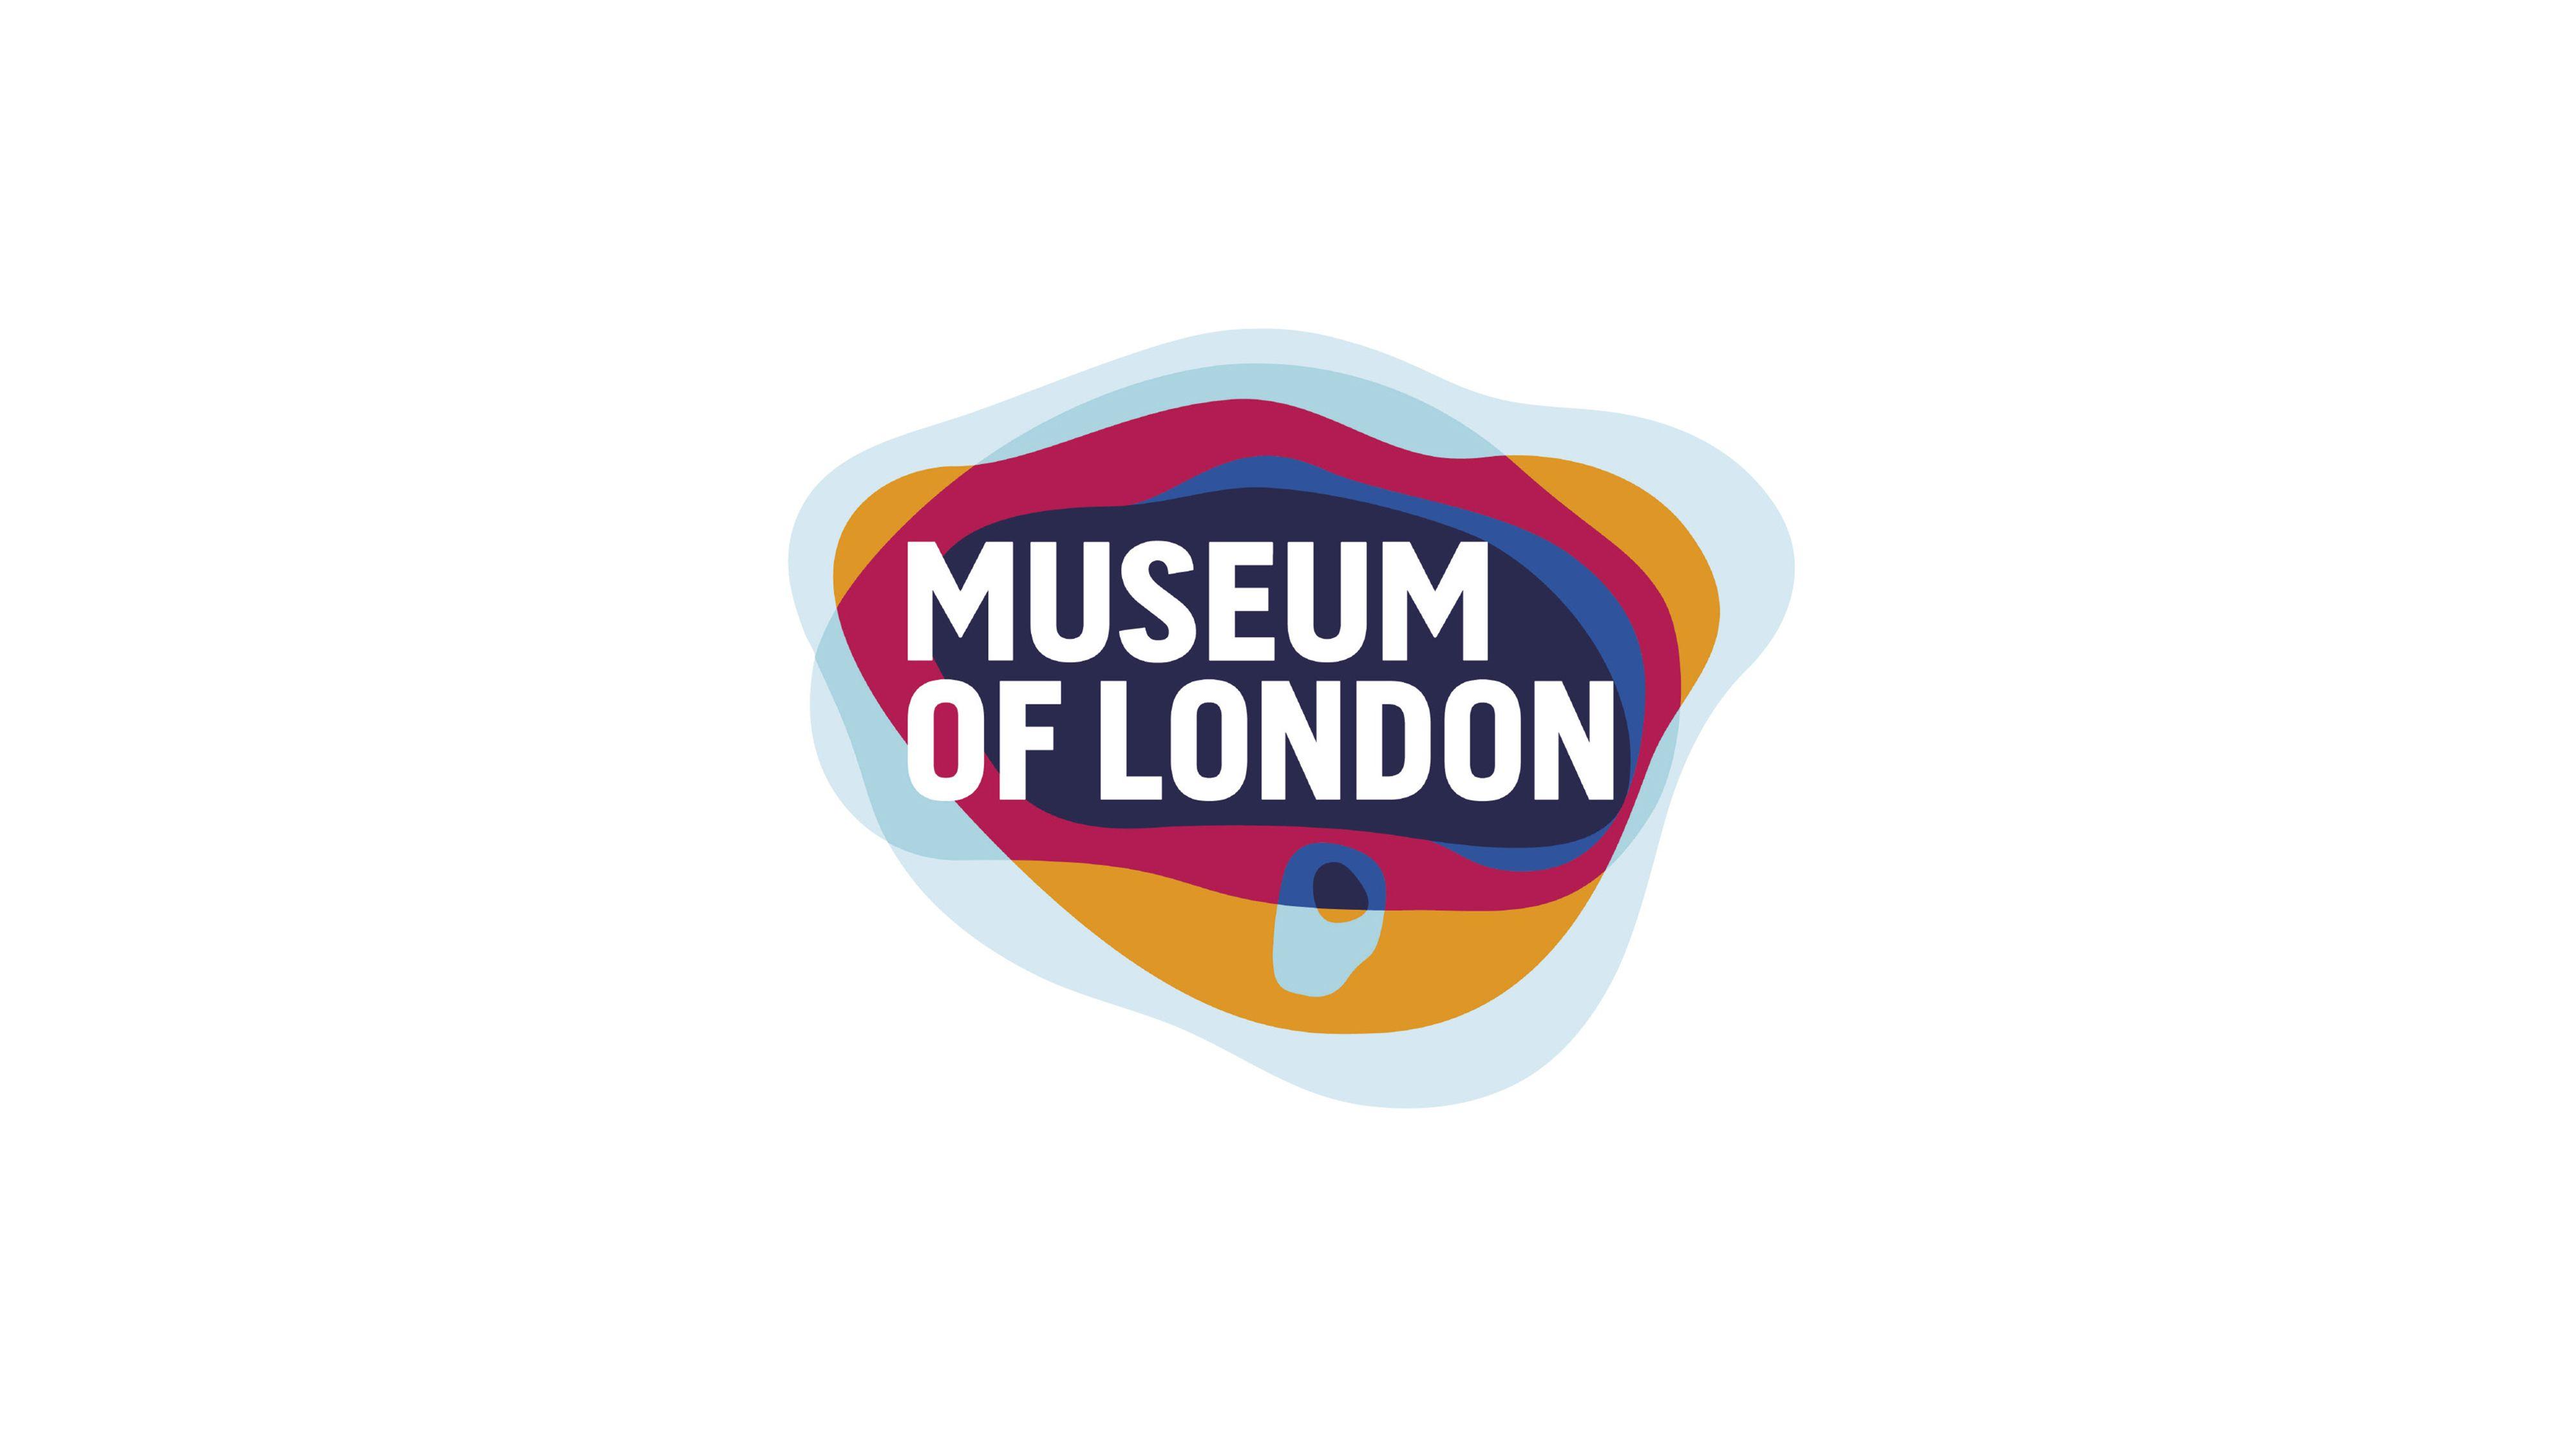 London Logo - Museum of London Branding - Global Branding Agency - Coley Porter Bell